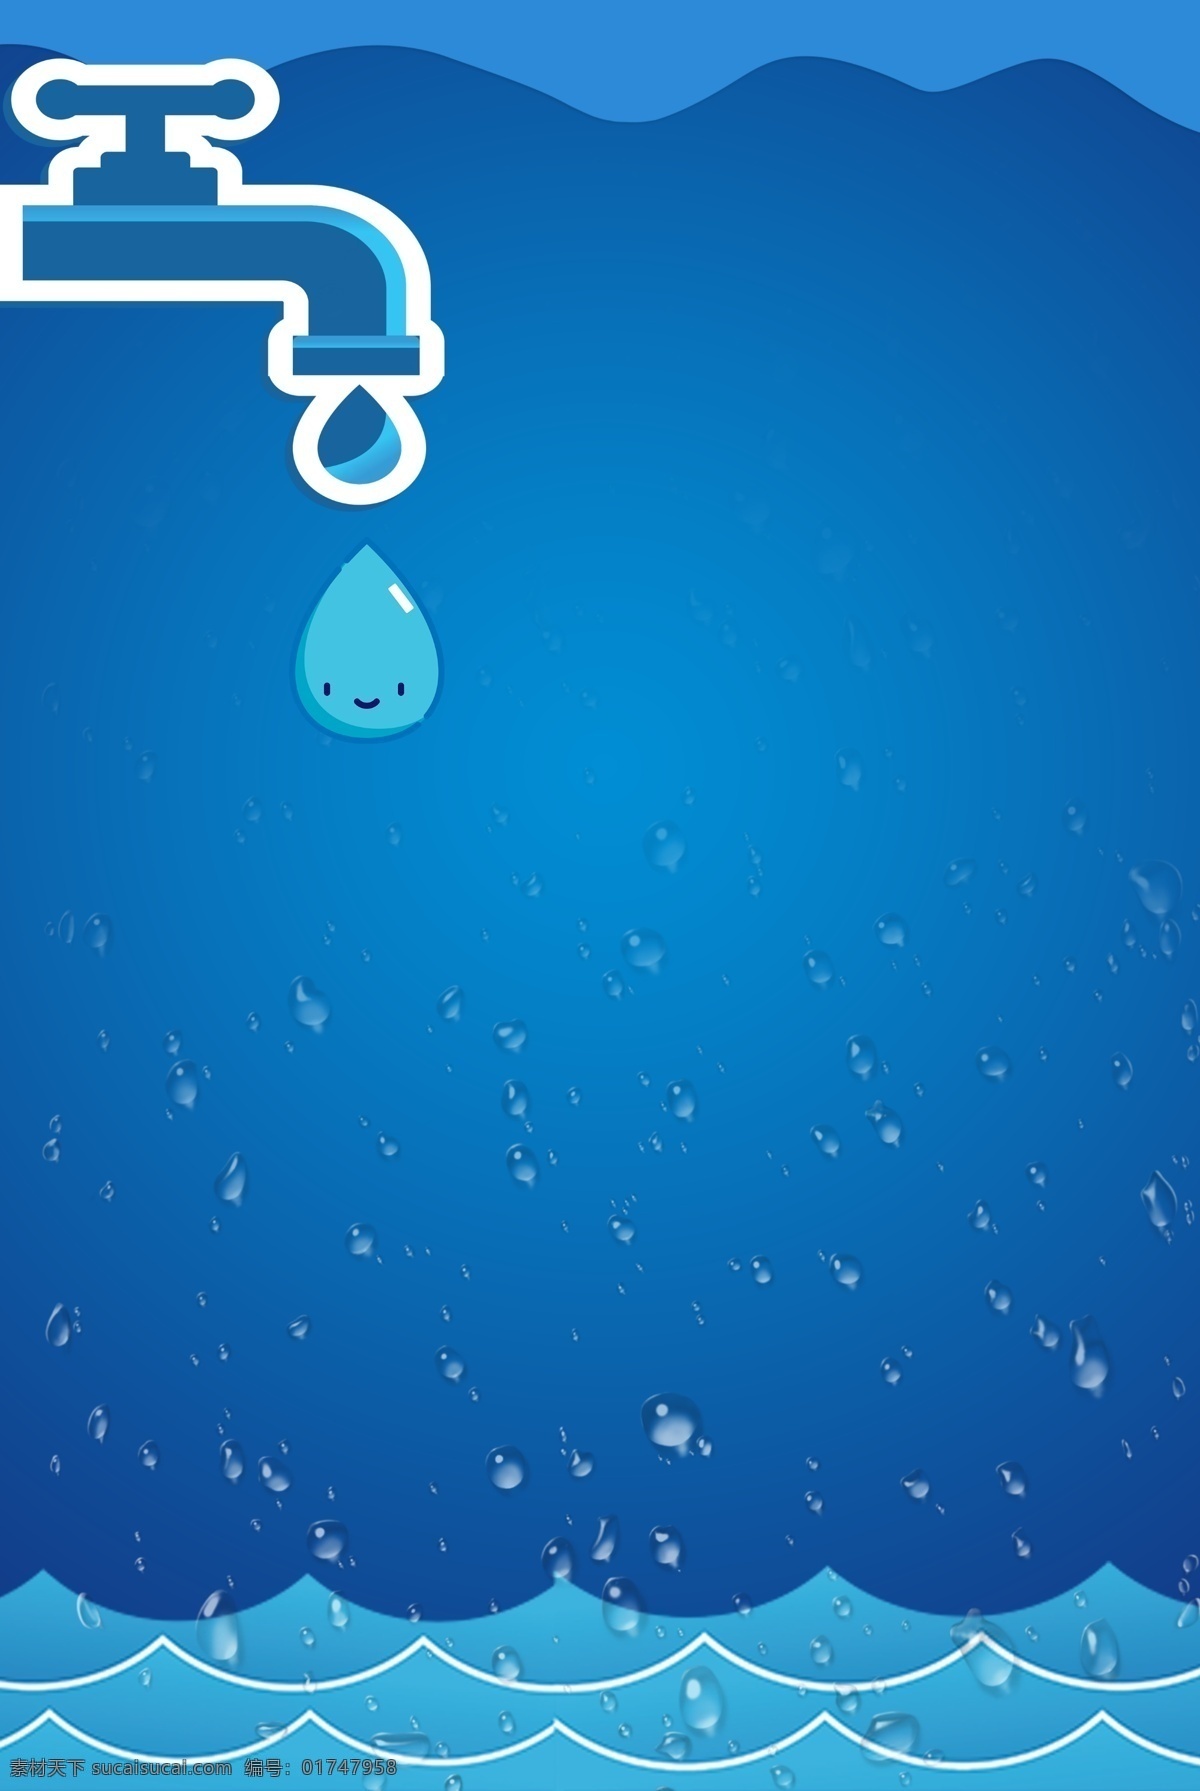 扁平 简约 蓝色 世界 水日 合成 创意 背景 世界水日 水资源 保护水资源 环保 节约用水 清新 水龙头 水滴